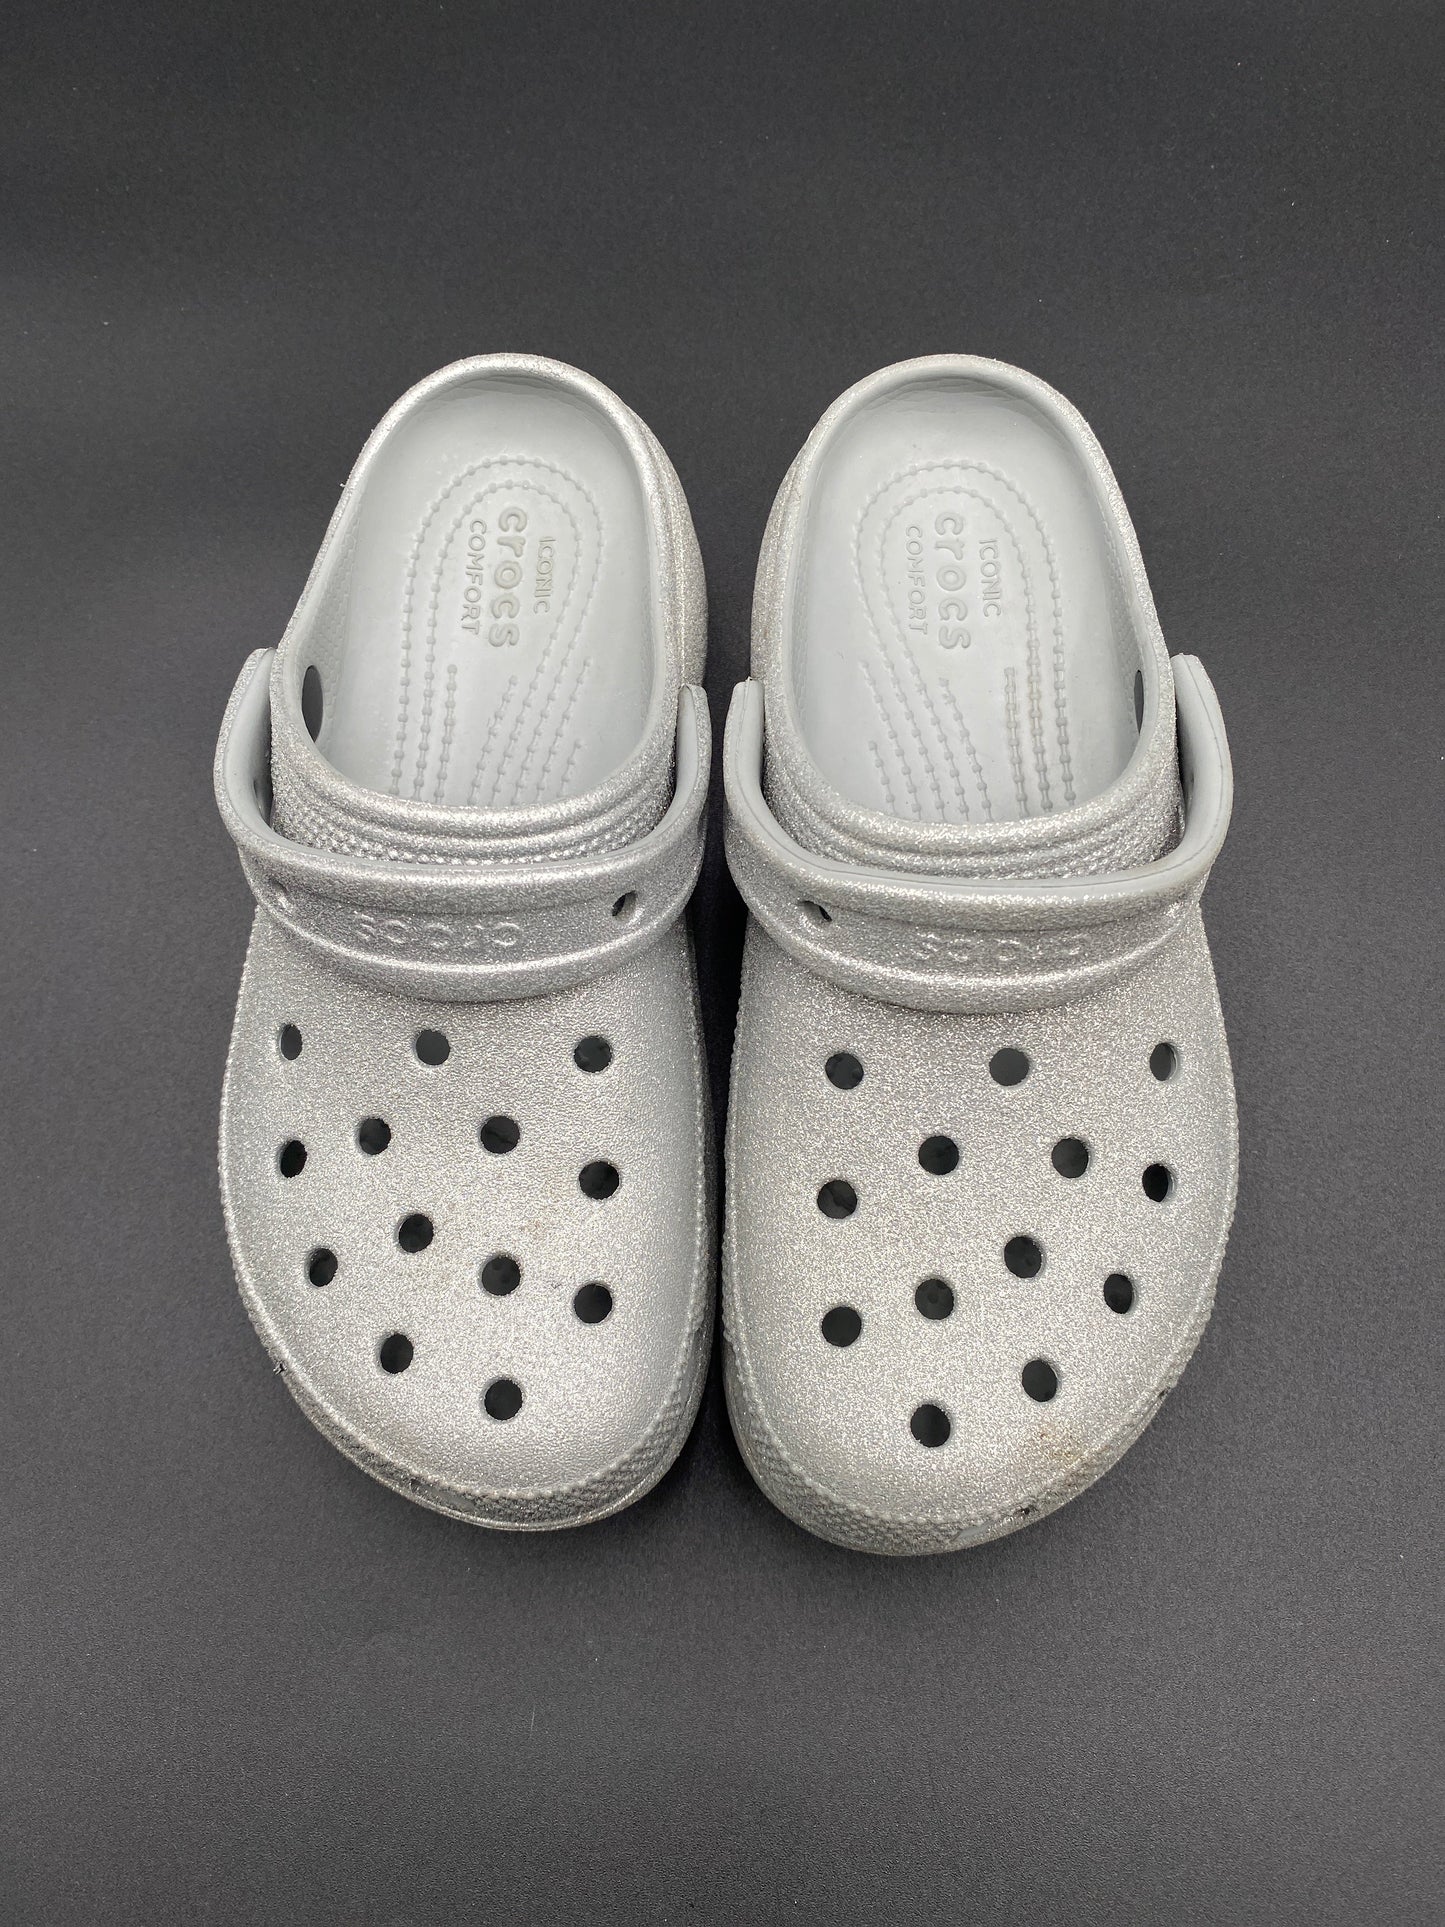 Silver Shoes Flats Crocs, Size 6